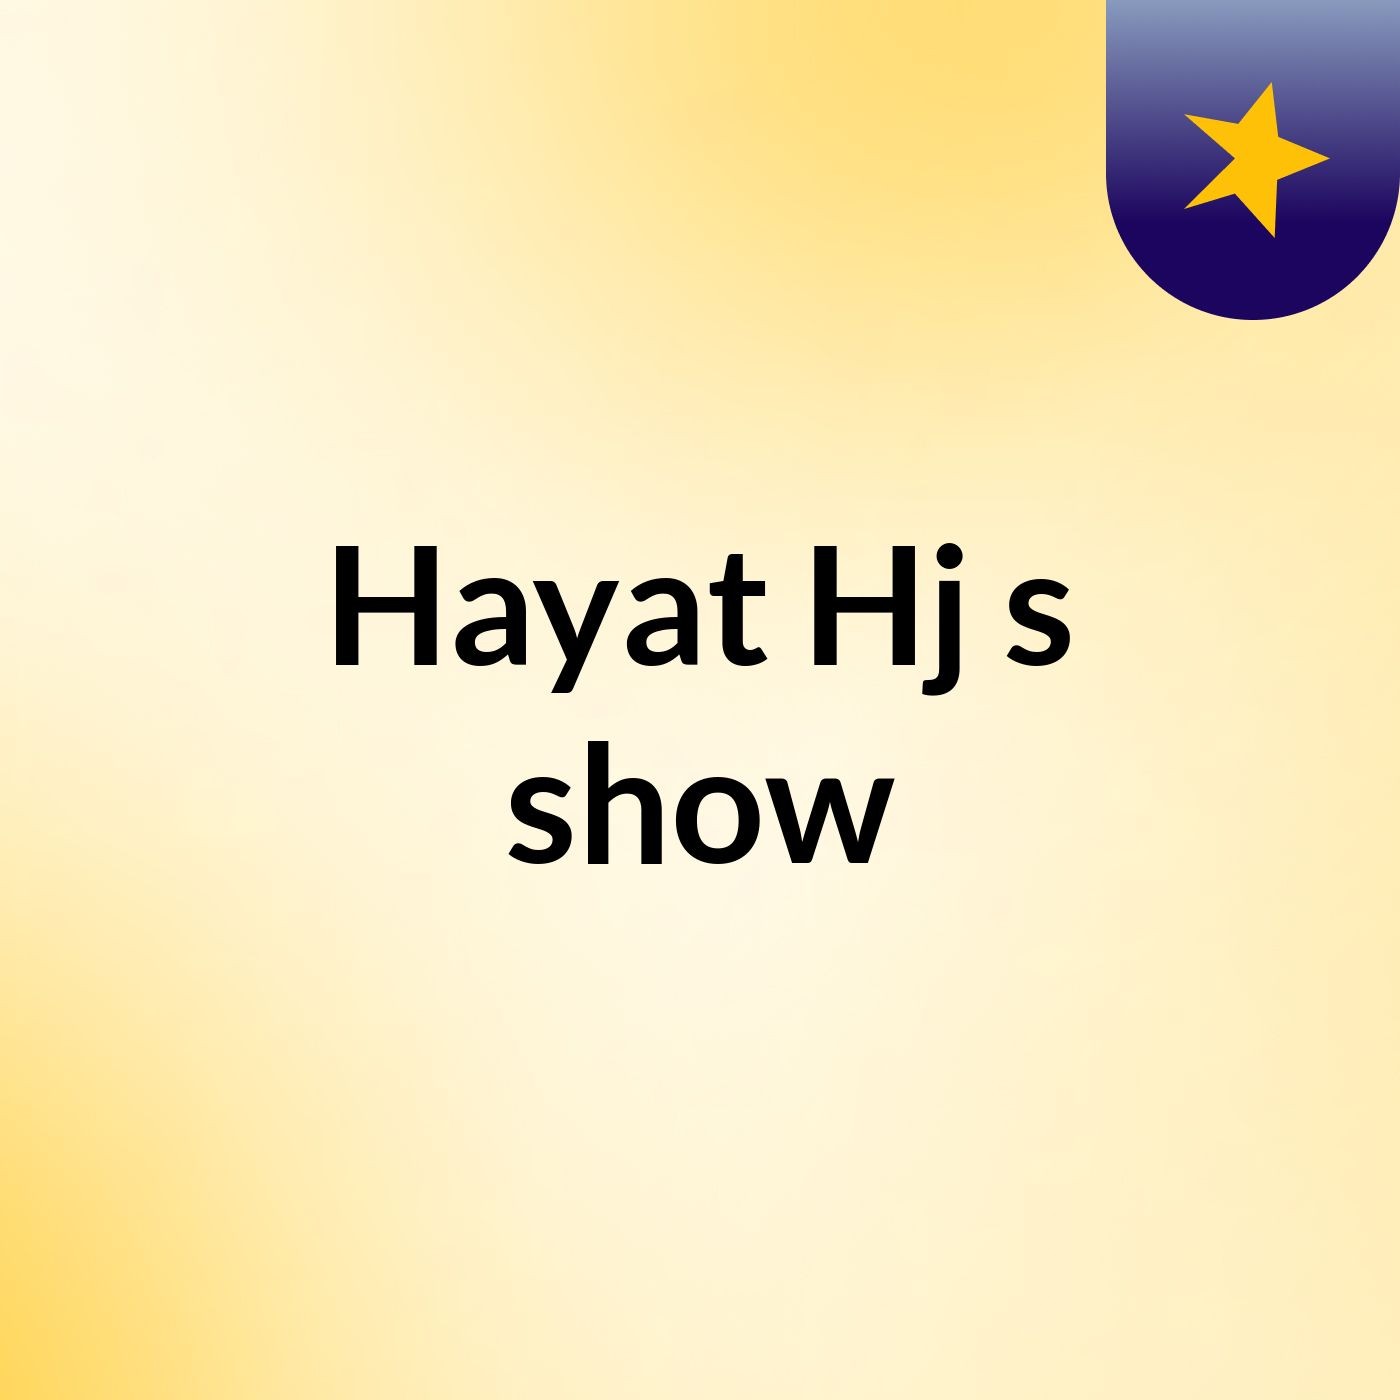 Hayat Hj's show